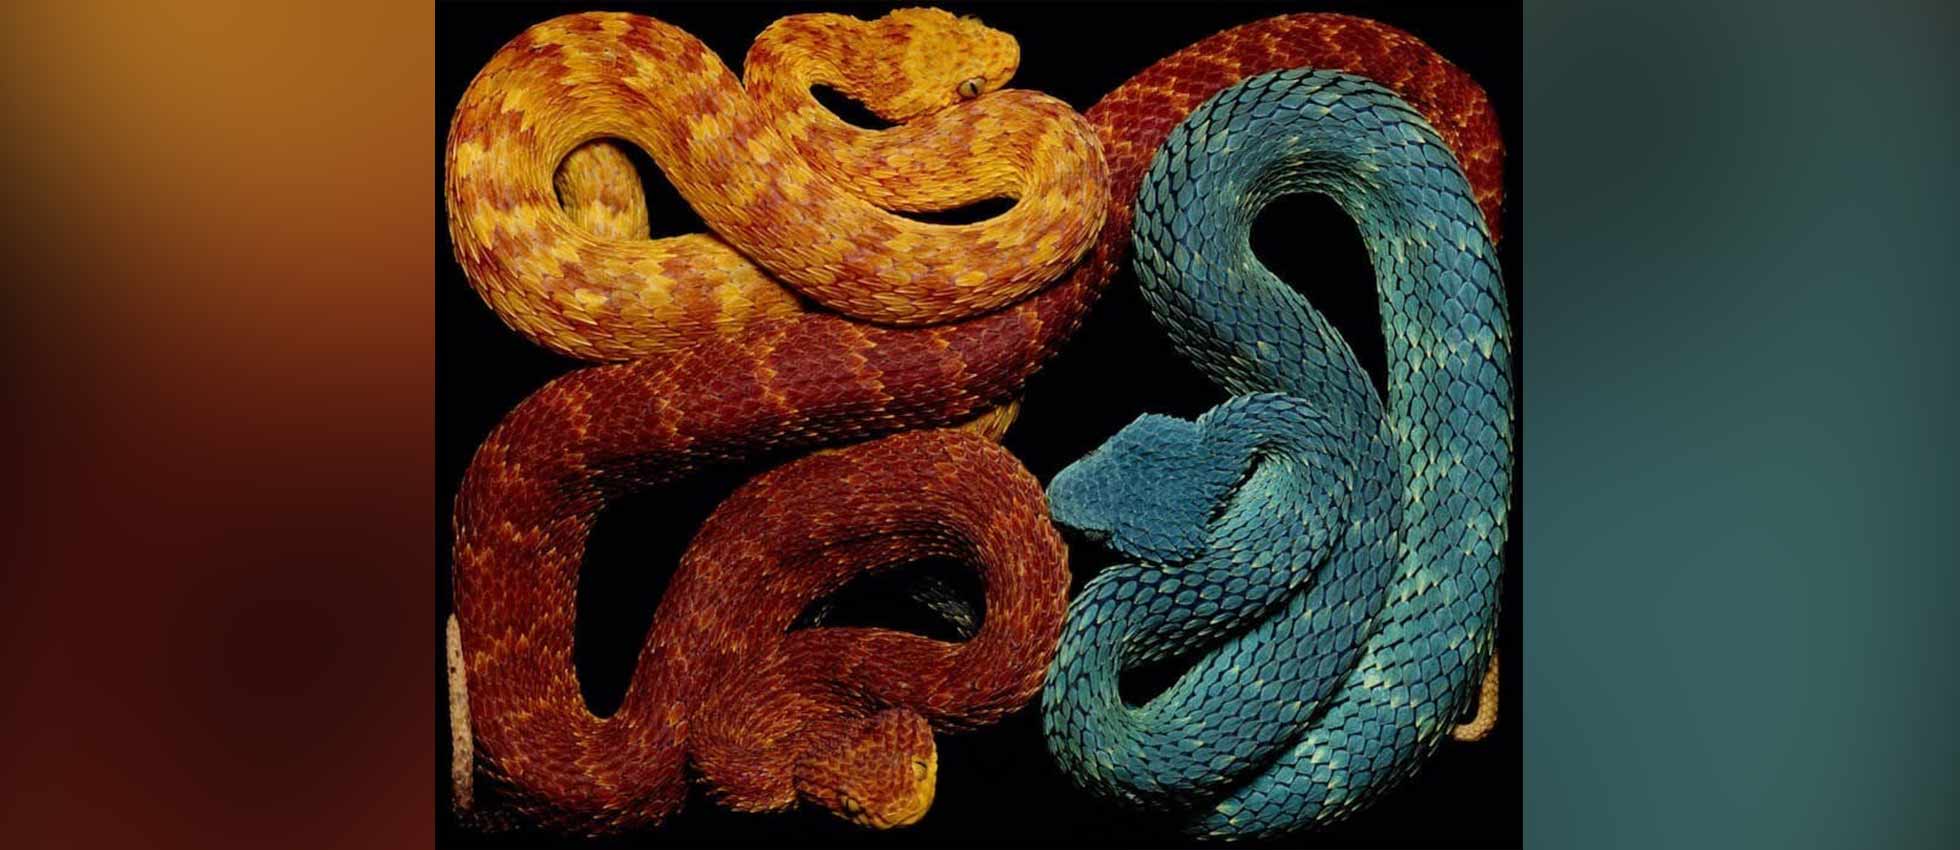 La belleza y diversidad de las serpientes por el fotógrafo Guido Mocafico